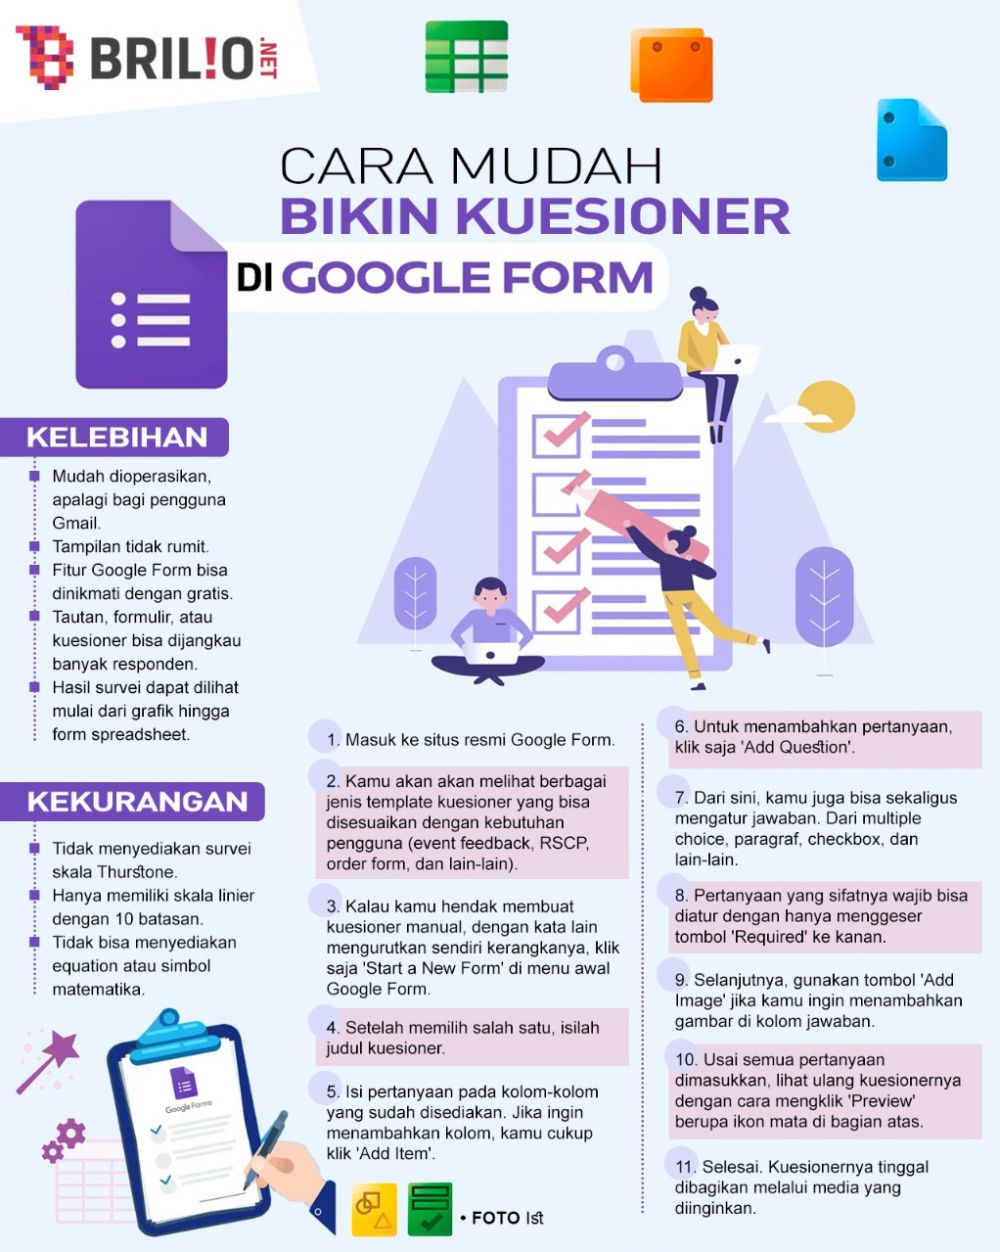 11 Langkah membuat kuesioner di Google Form, tugas lebih tertata